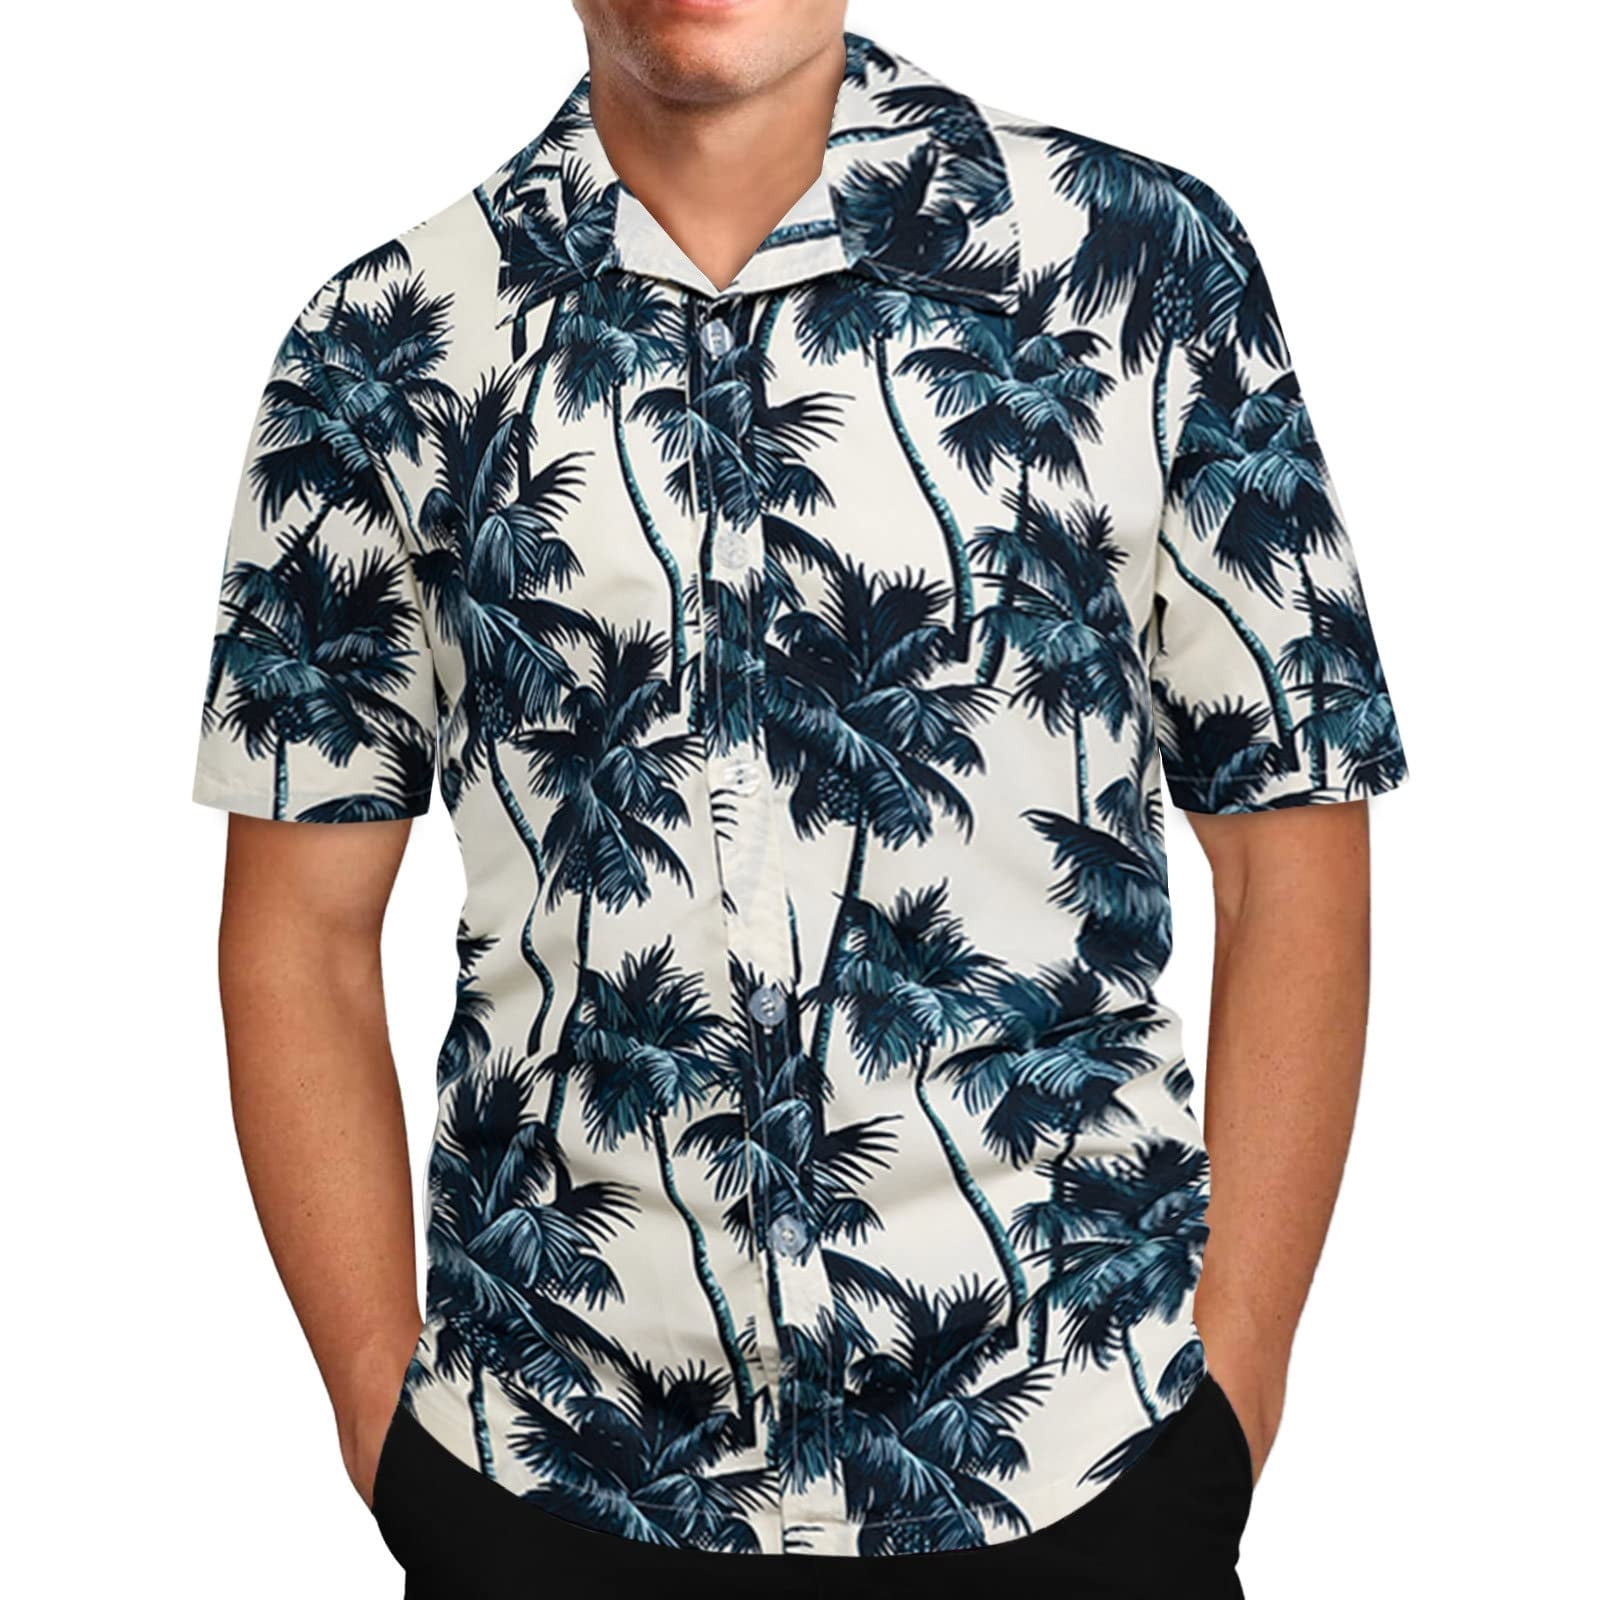 Yunmic Shirts Clearance Summer Men's Hawaiian Print Lapel Short Sleeve ...